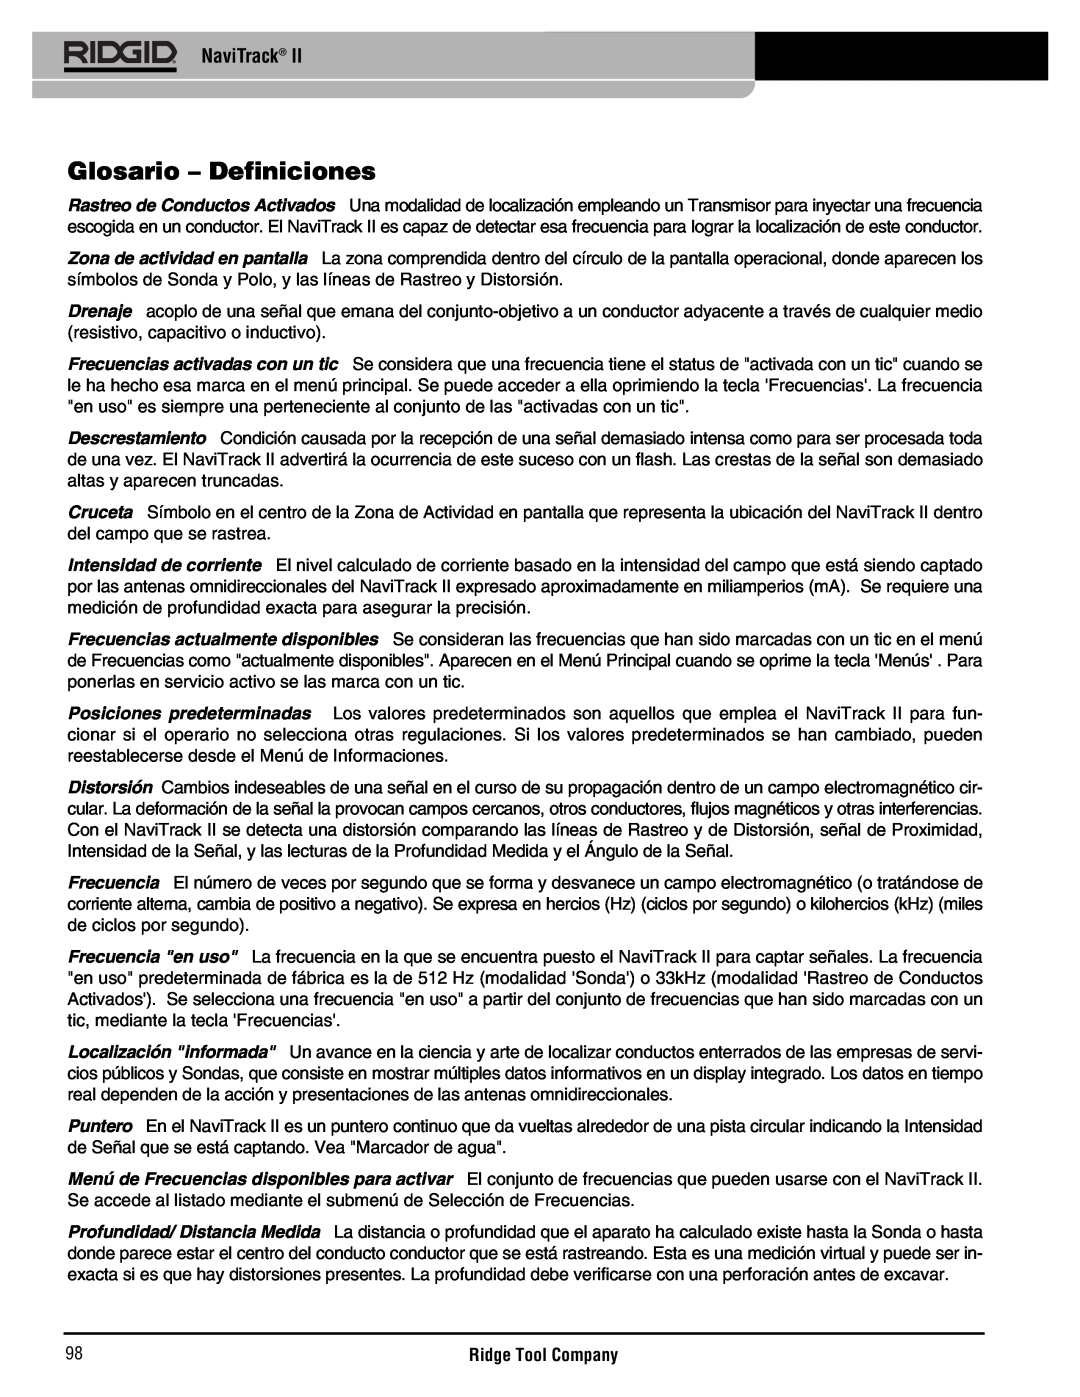 RIDGID Metal Detector manual Glosario - Definiciones, NaviTrack 